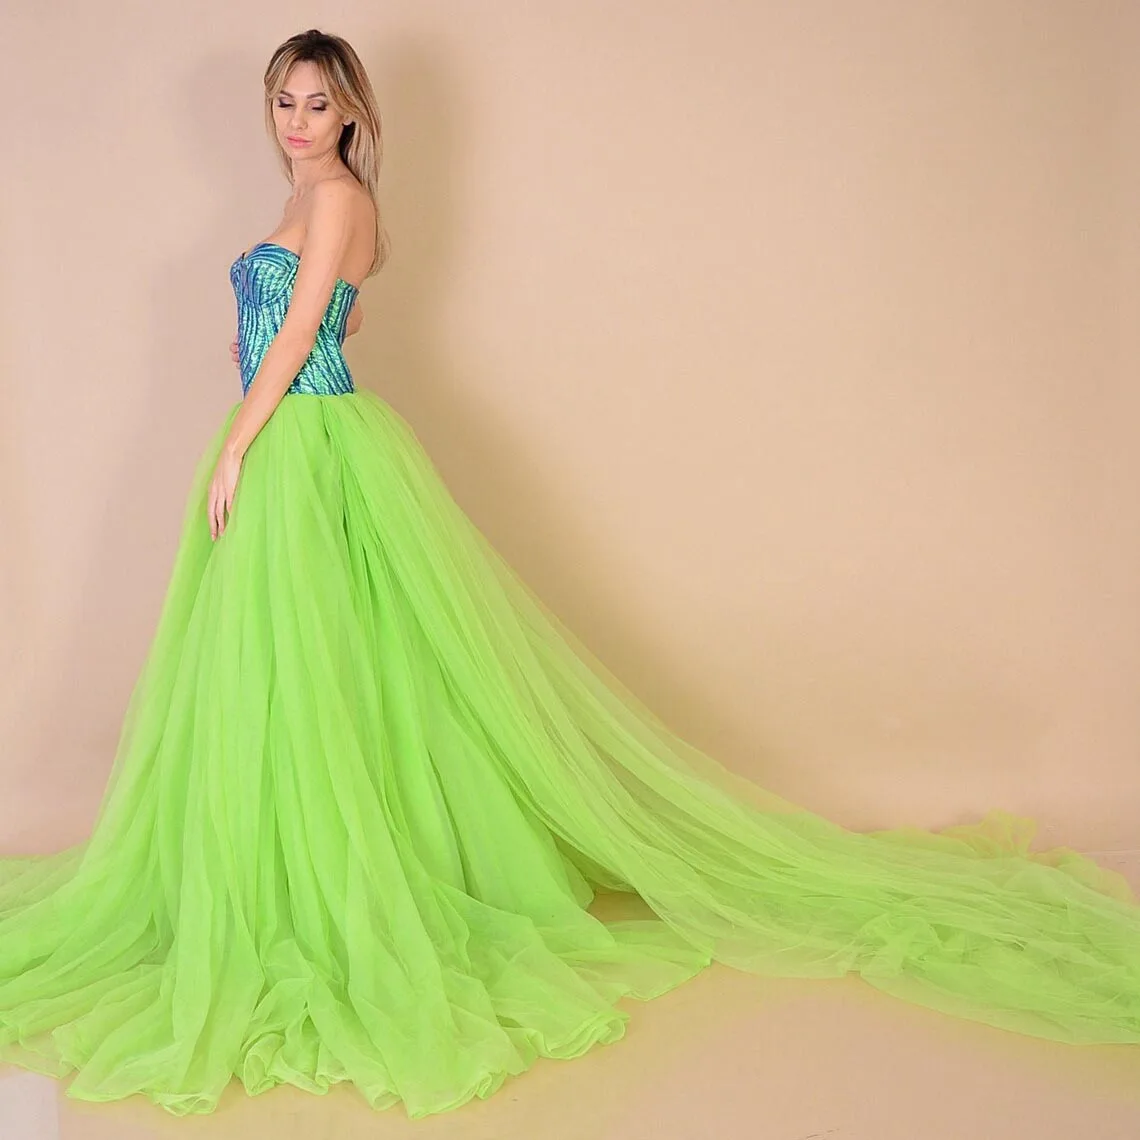 

Юбка женская вечерняя из фатина, длинная Плиссированная Свадебная юбка с завышенной талией, с длинным шлейфом, на заказ, цвет зеленый лайм